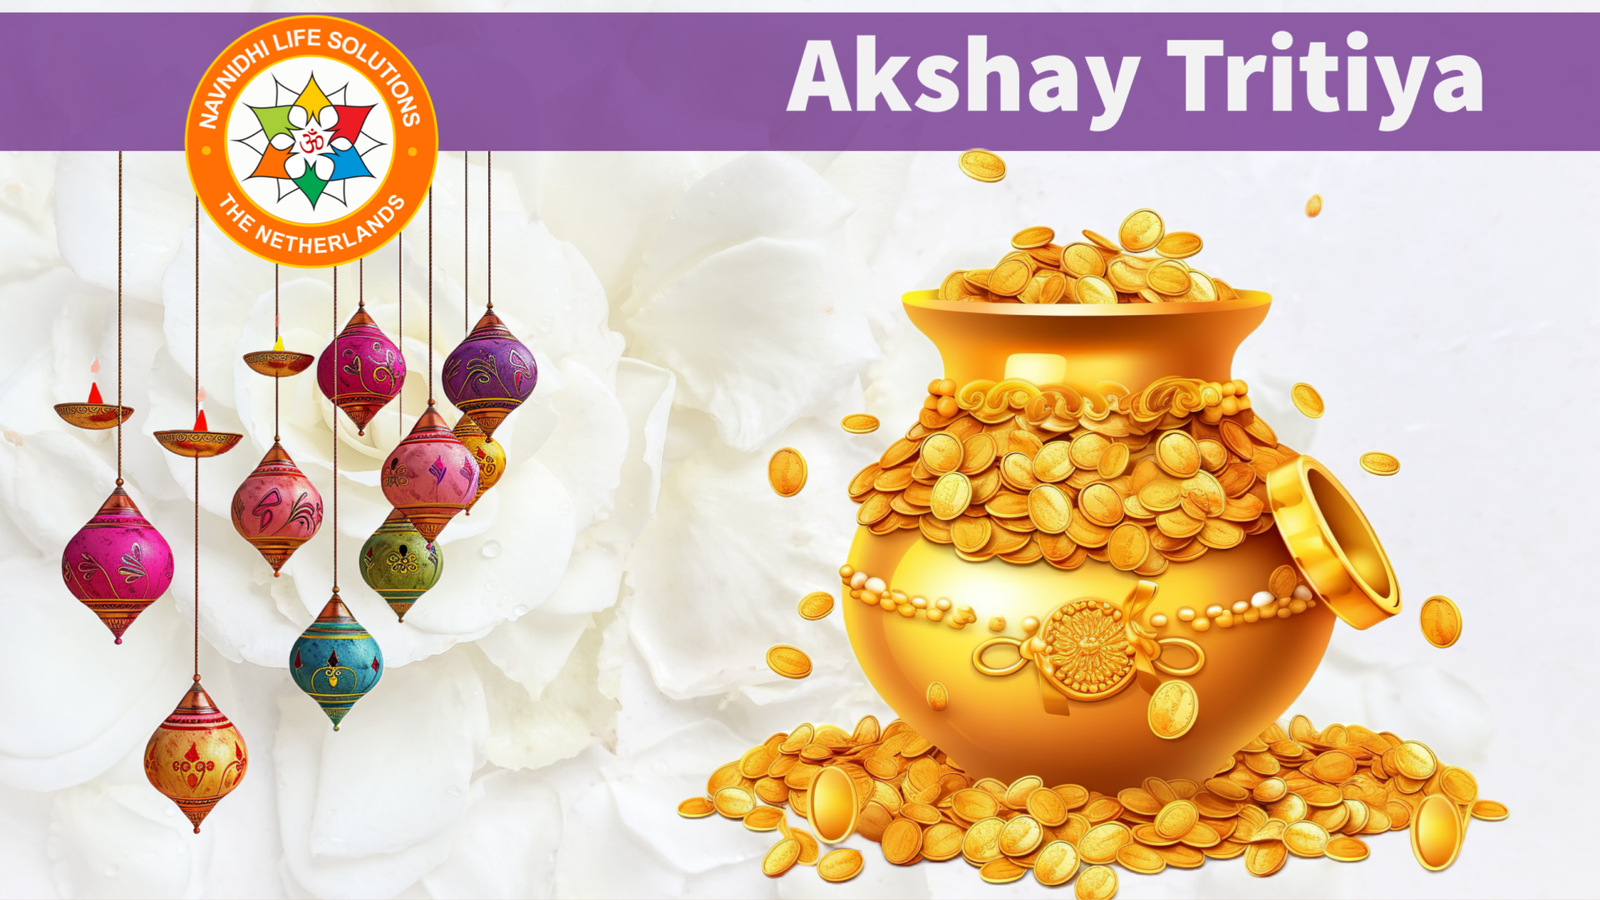 Akshay Tritiya festival Akha Teej Jain festival